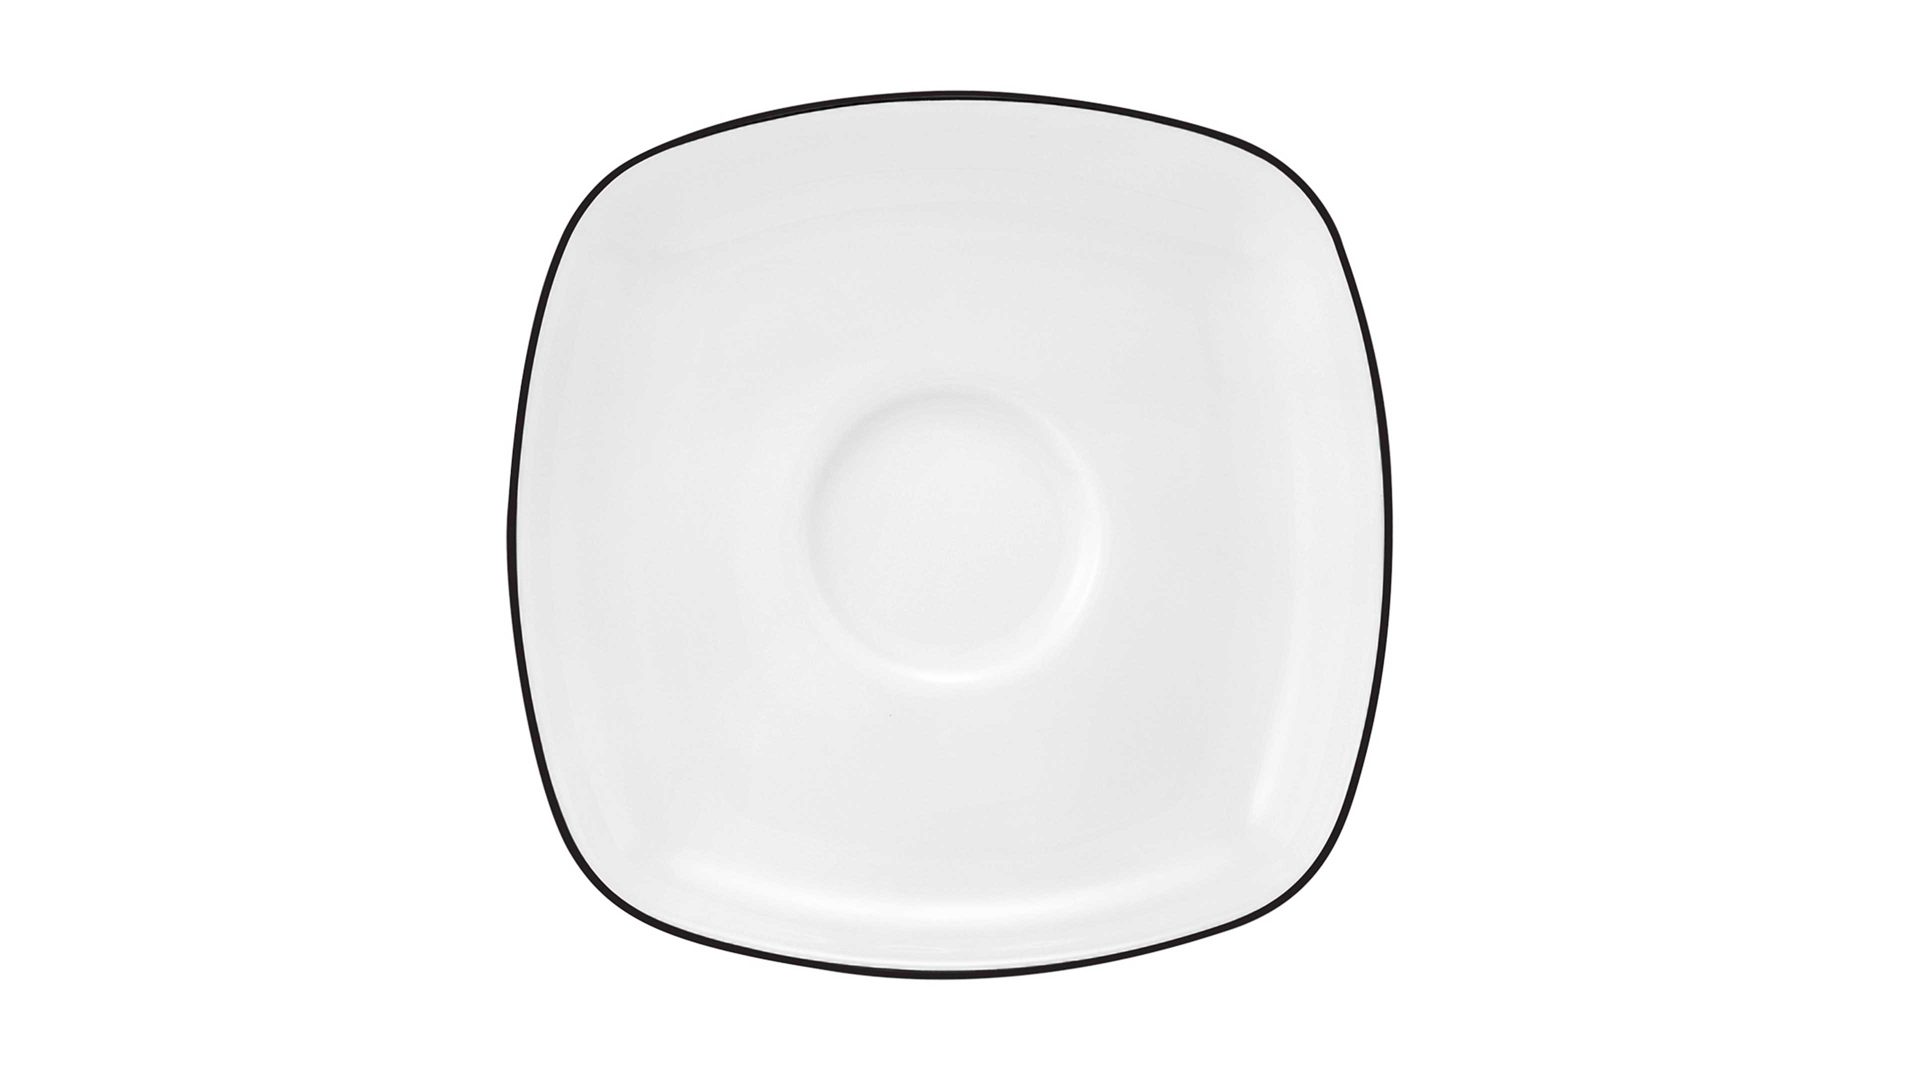 Unterteller Seltmann aus Porzellan in Weiß Seltmann Lido – Teetassen-Unterteller weißes Porzellan – eckig, ca. 16 x 16 cm